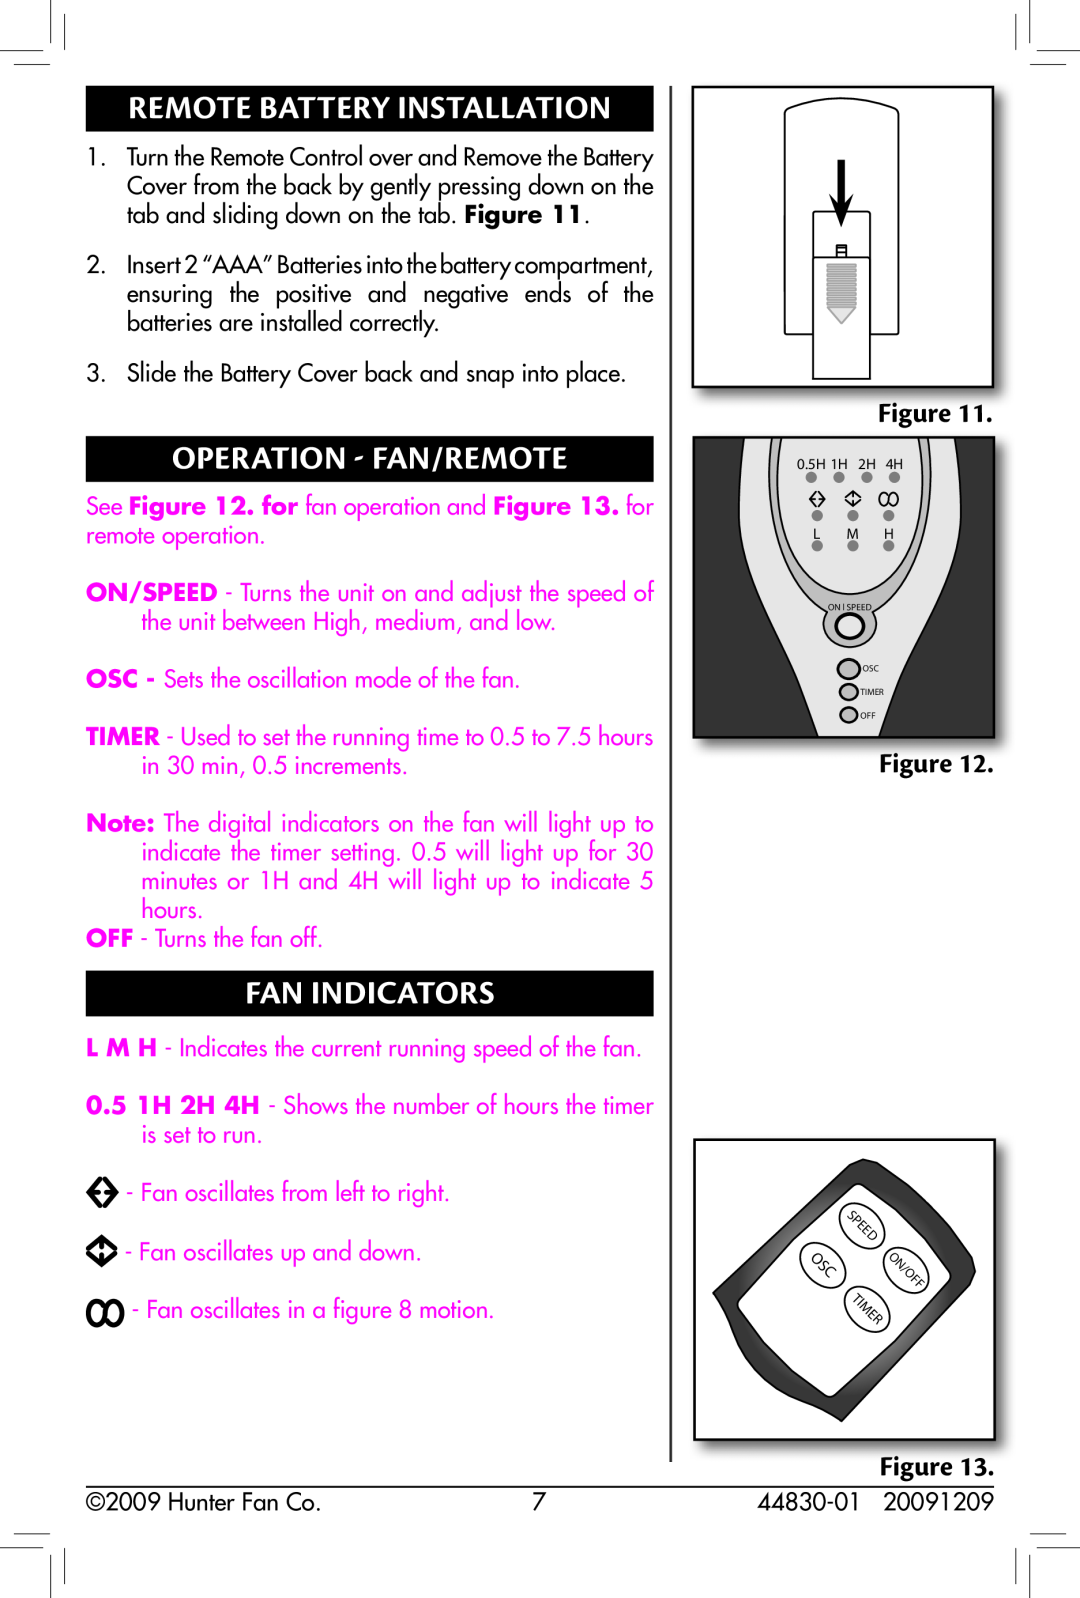 Hunter Fan 90391, 44830-01 Remote Battery Installation, Operation - Fan/remote, Fan Indicators, OFF - Turns the fan off 